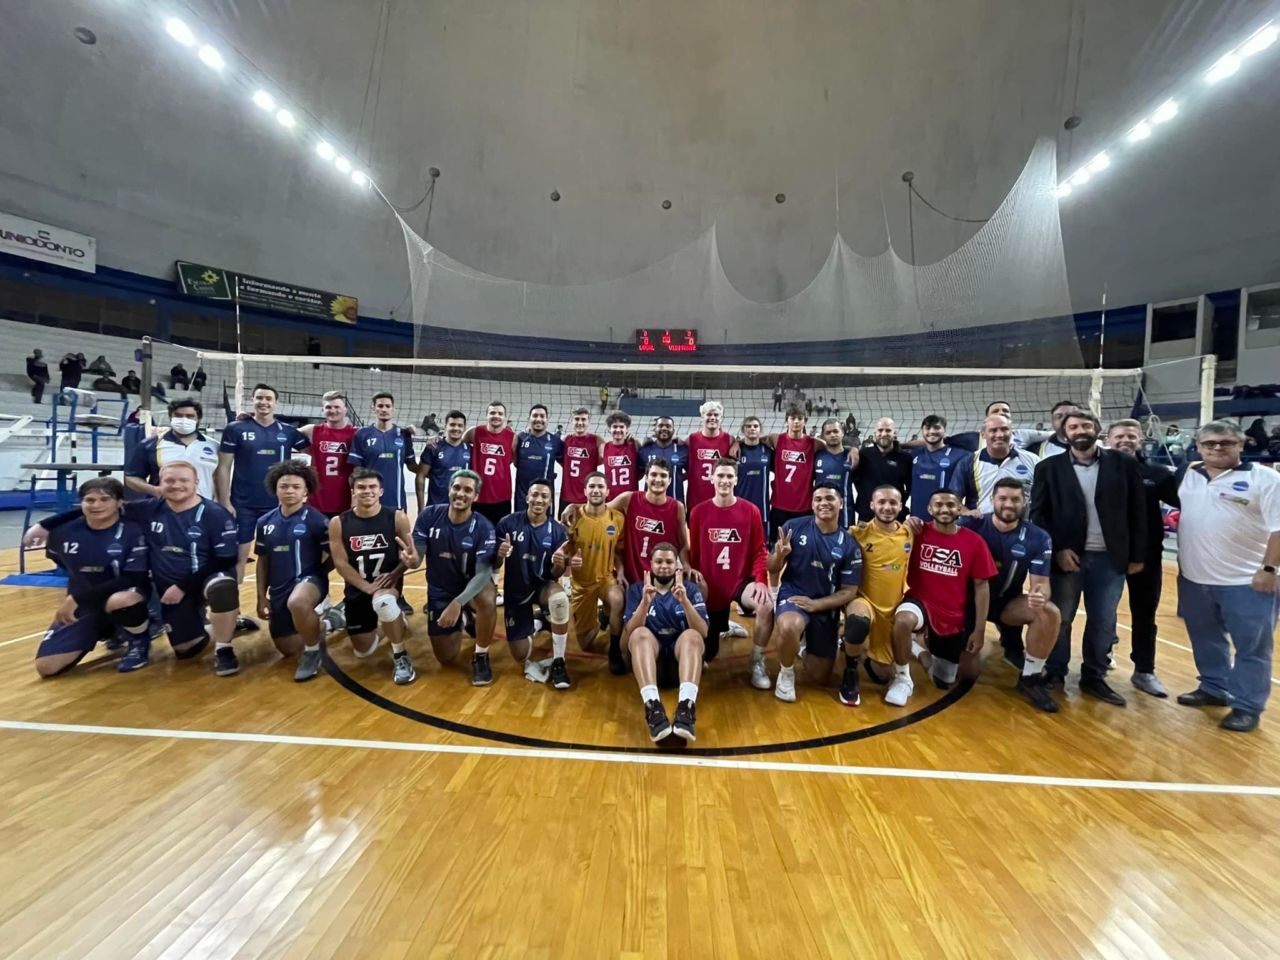 Foto geral das equipes de vôlei de Jundiaí e dos Estados Unidos no ginásio do Bolão